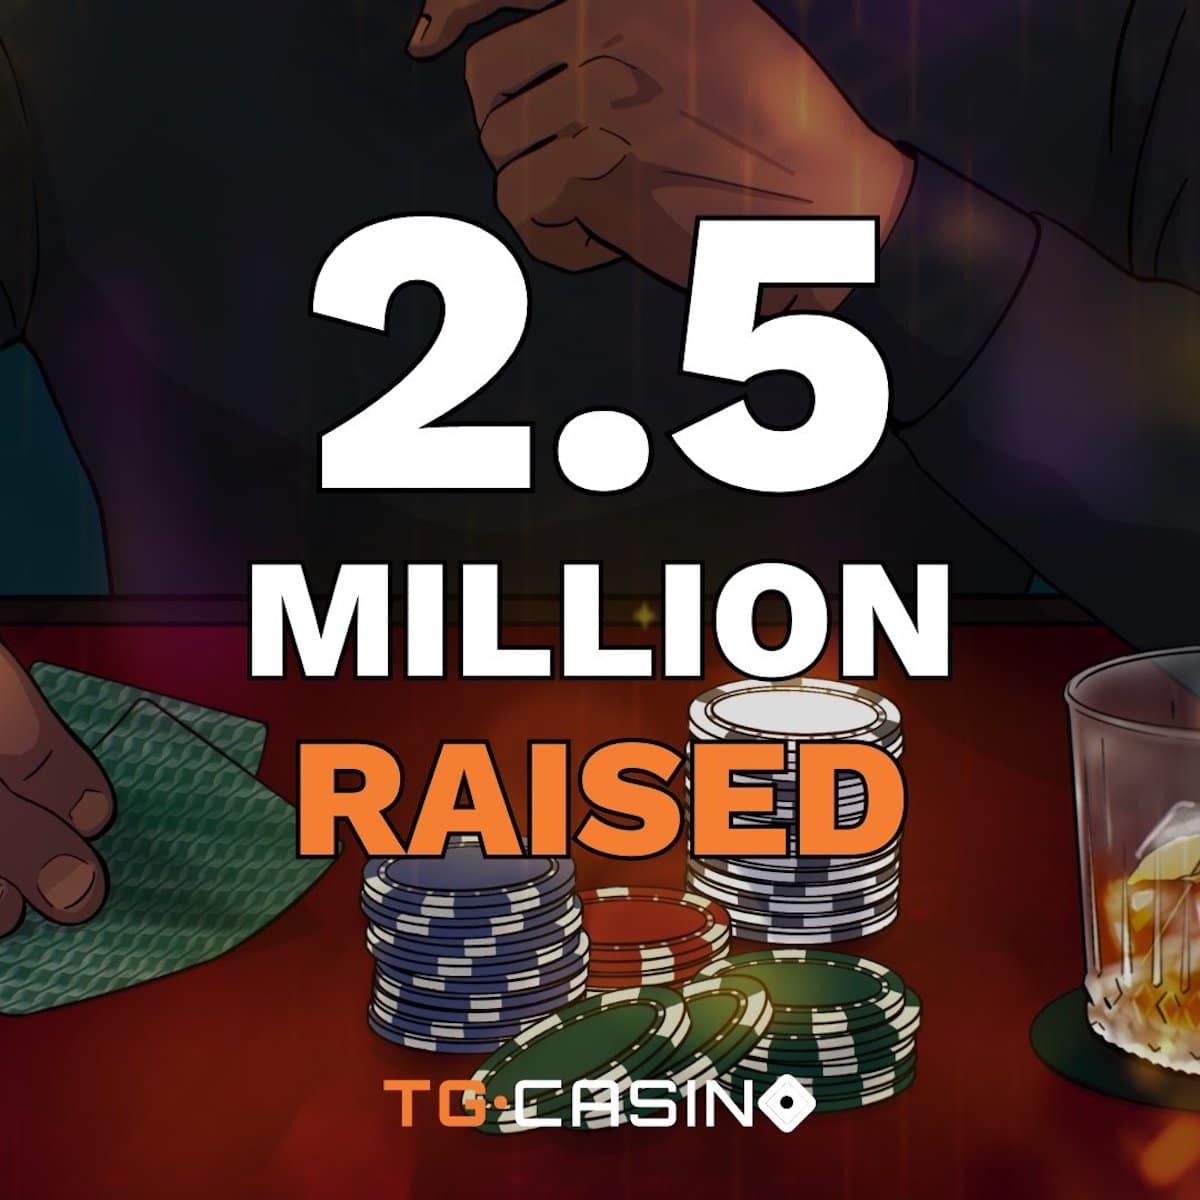 rollbit competitor tg.casino raises $2.5m